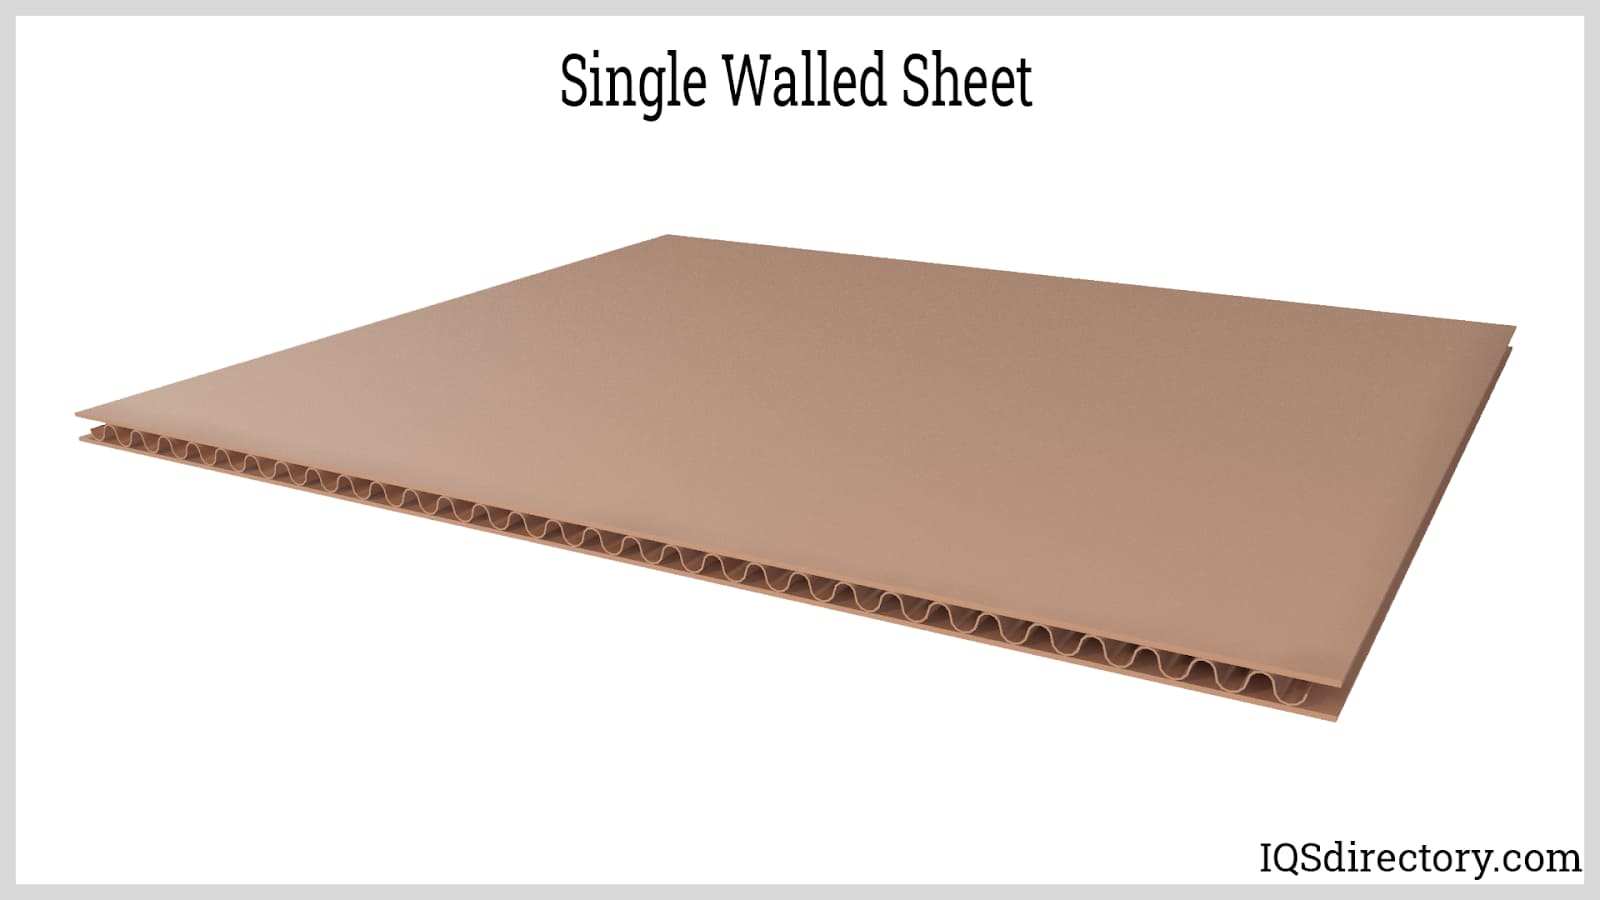 Single Walled Sheet